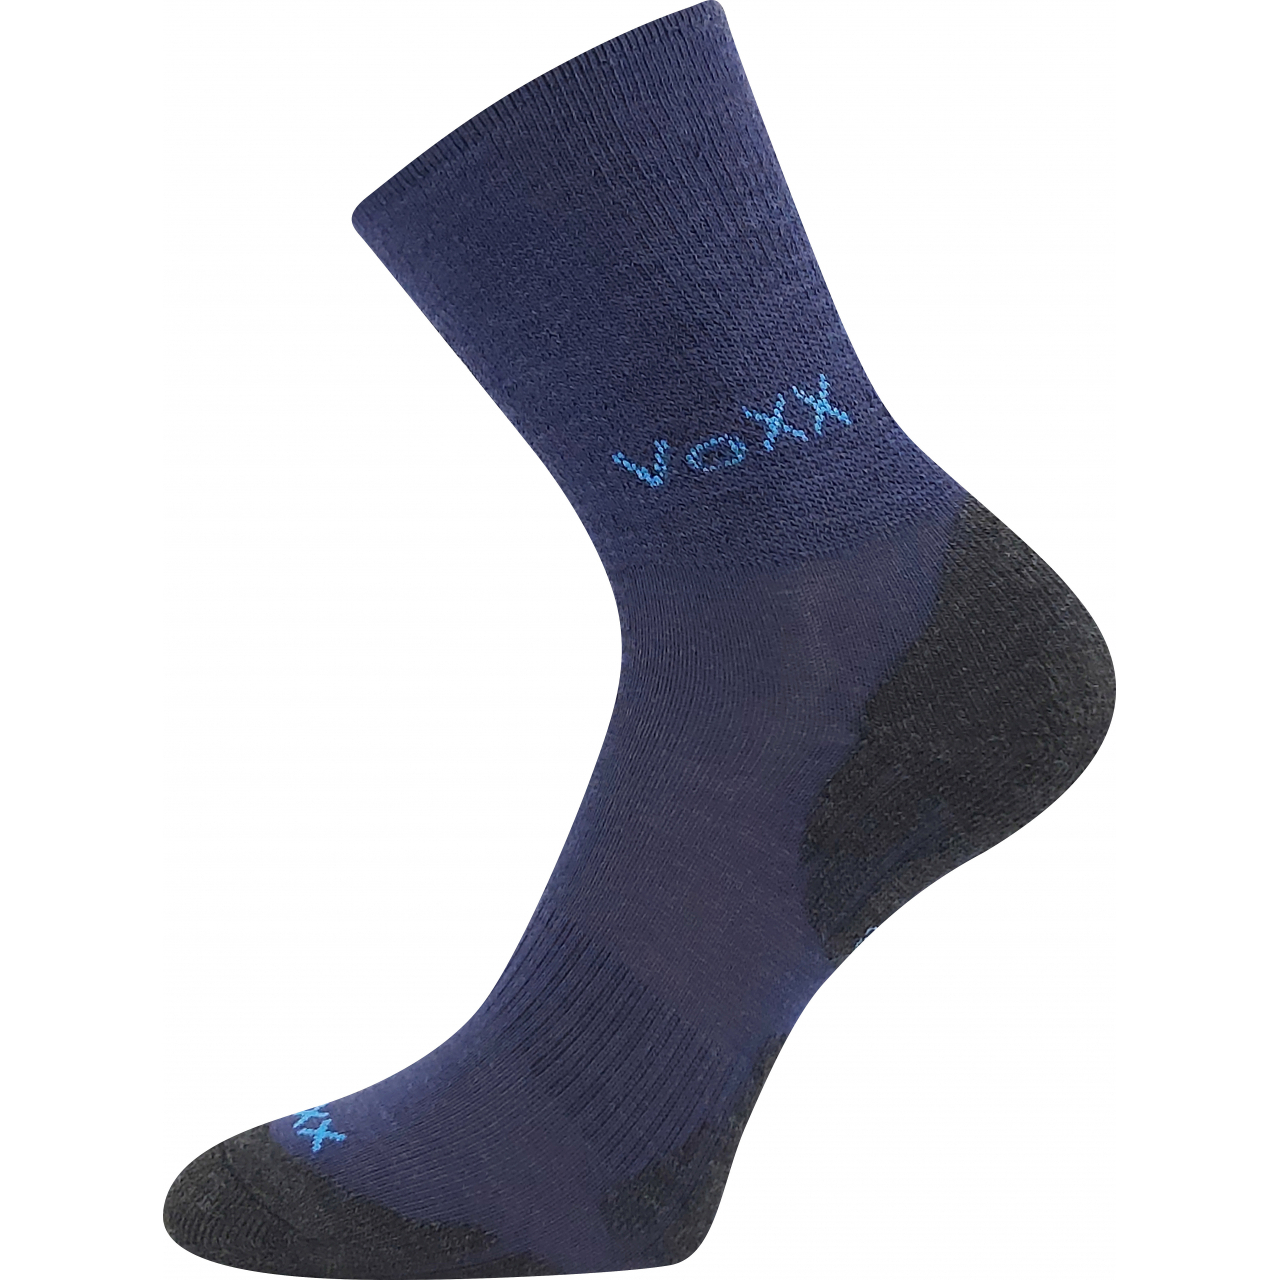 Ponožky zimní dětské Voxx Irizarik - tmavě modré, 30-34